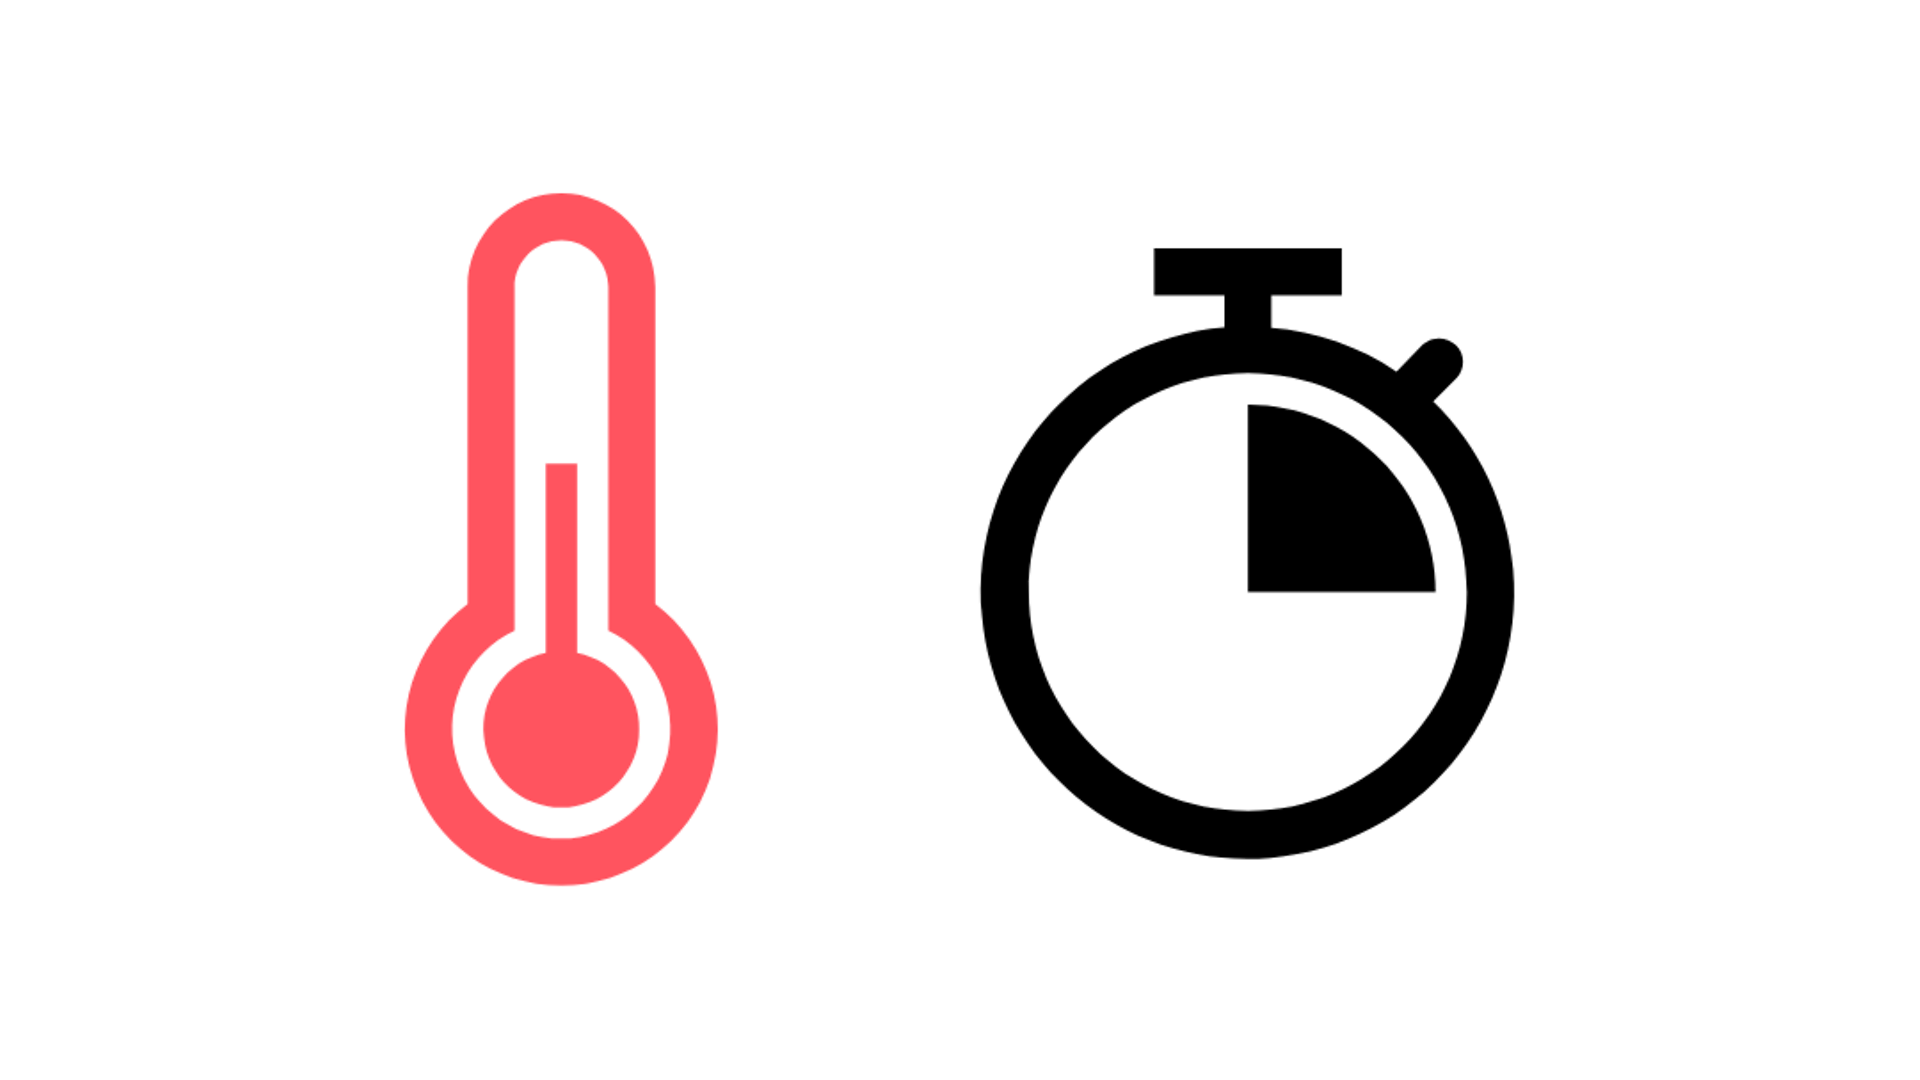 símbolo rojo para termómetro y símbolo de reloj, cuarto de hora